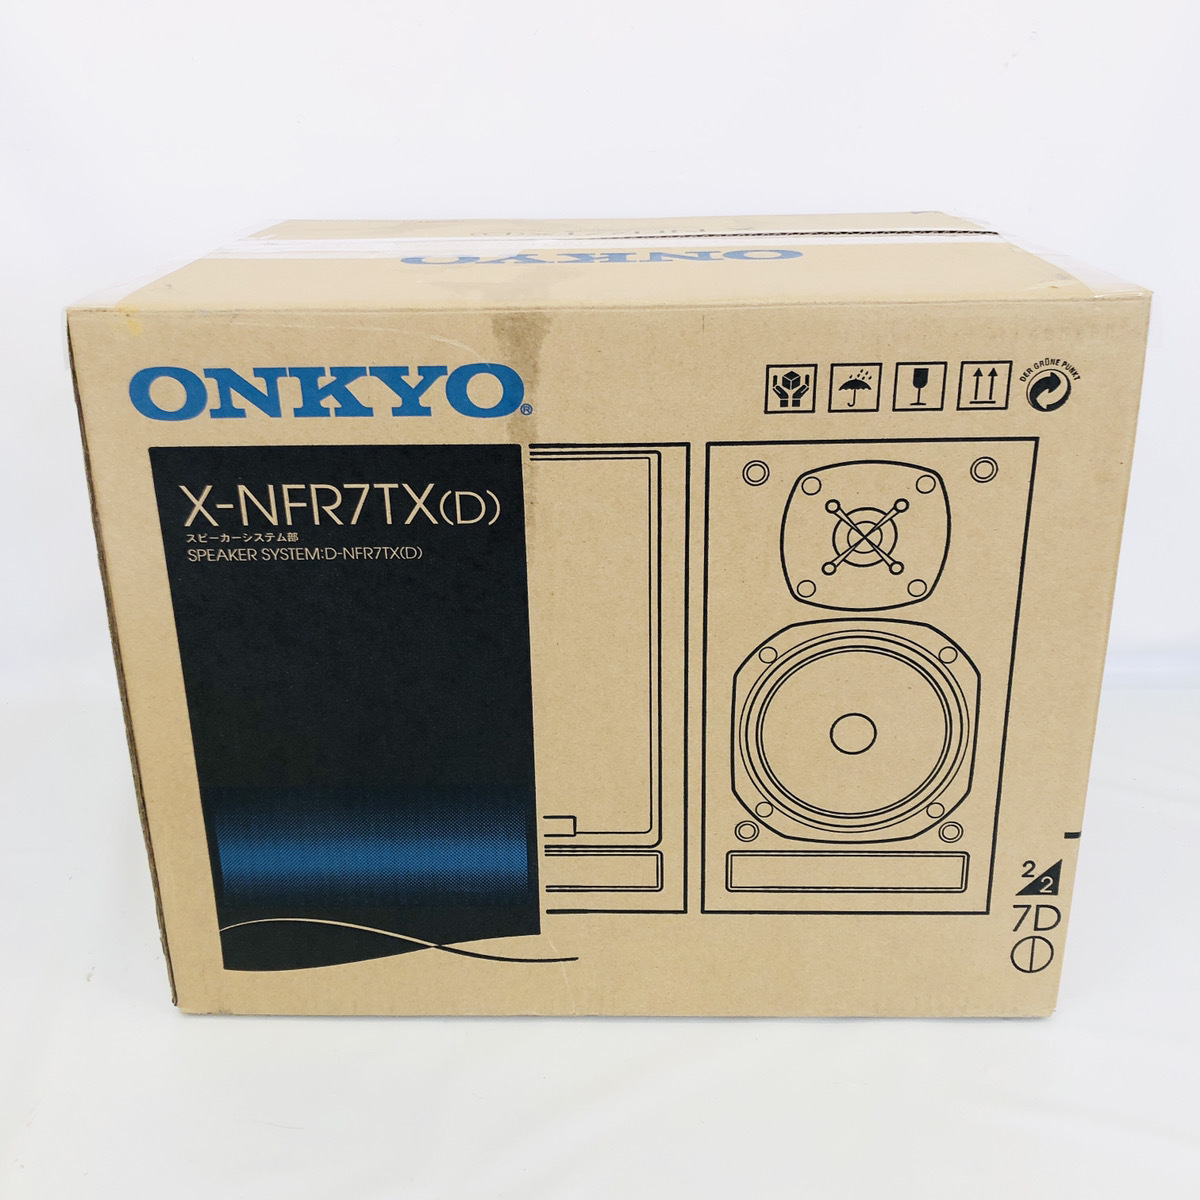 ■商品名：【1円スタート】開封済み/未使用品 ONKYO X-NFR7TX (D) スピーカーシステム部 の画像1